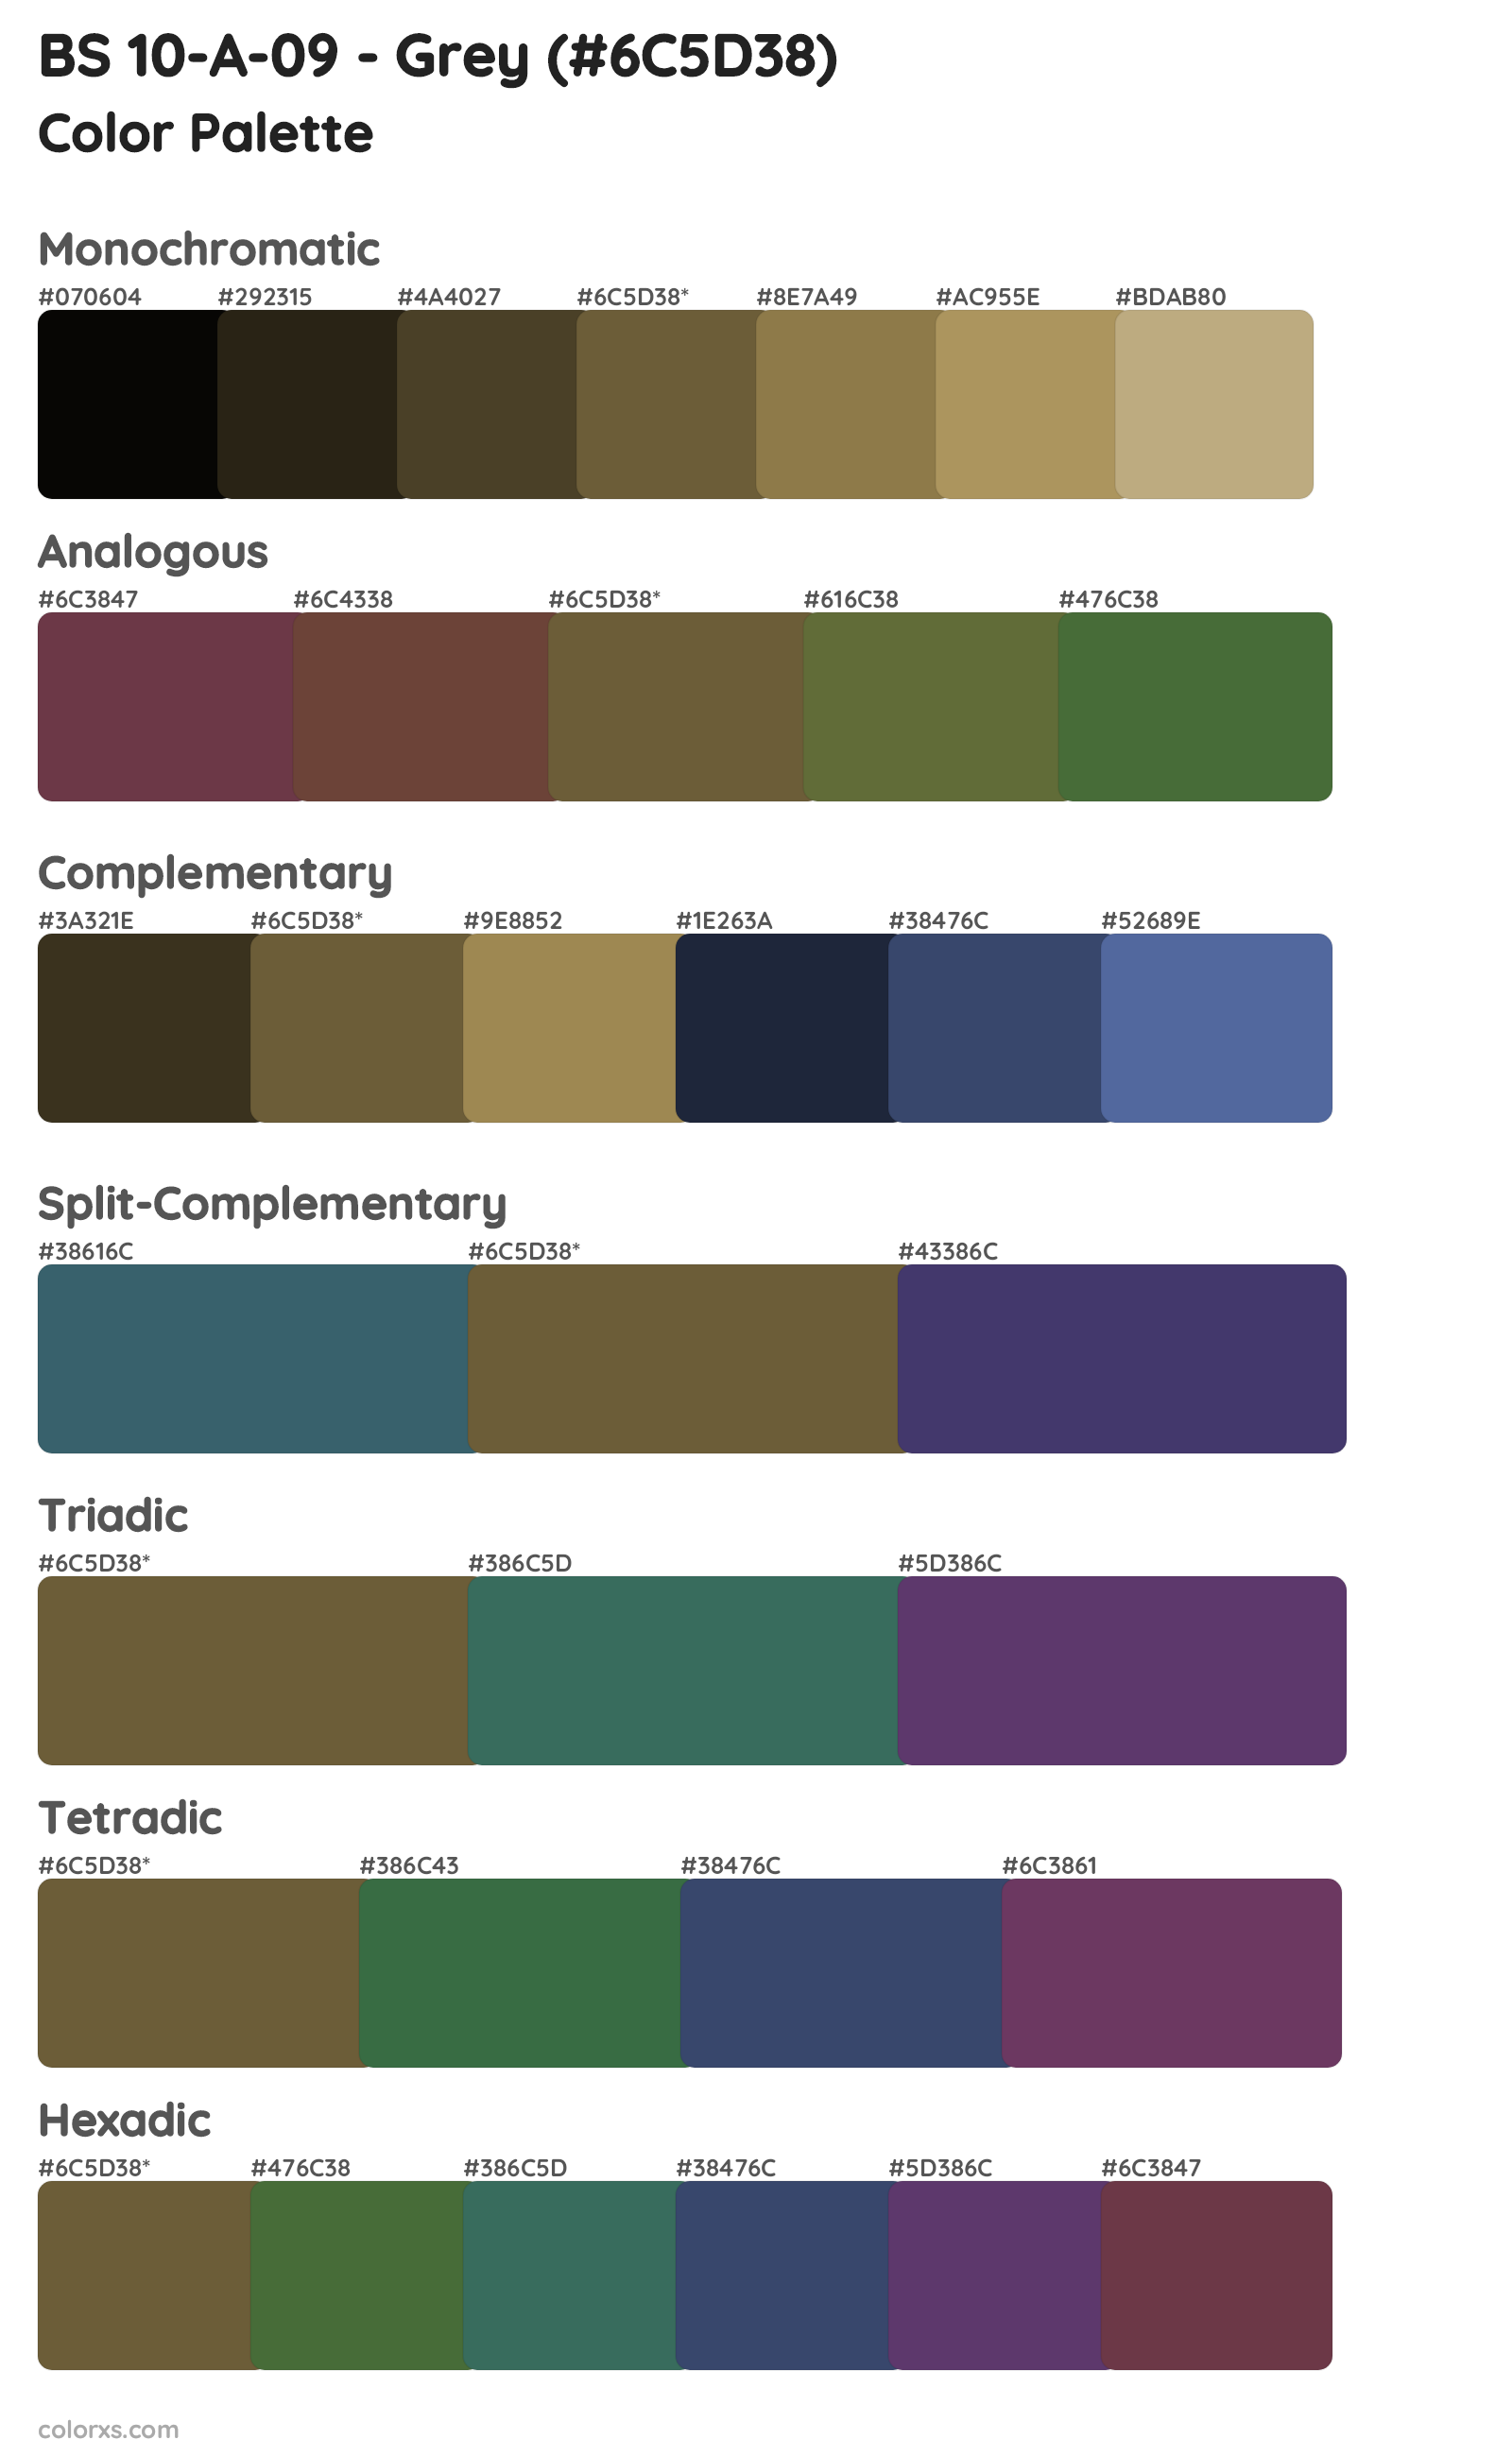 BS 10-A-09 - Grey Color Scheme Palettes